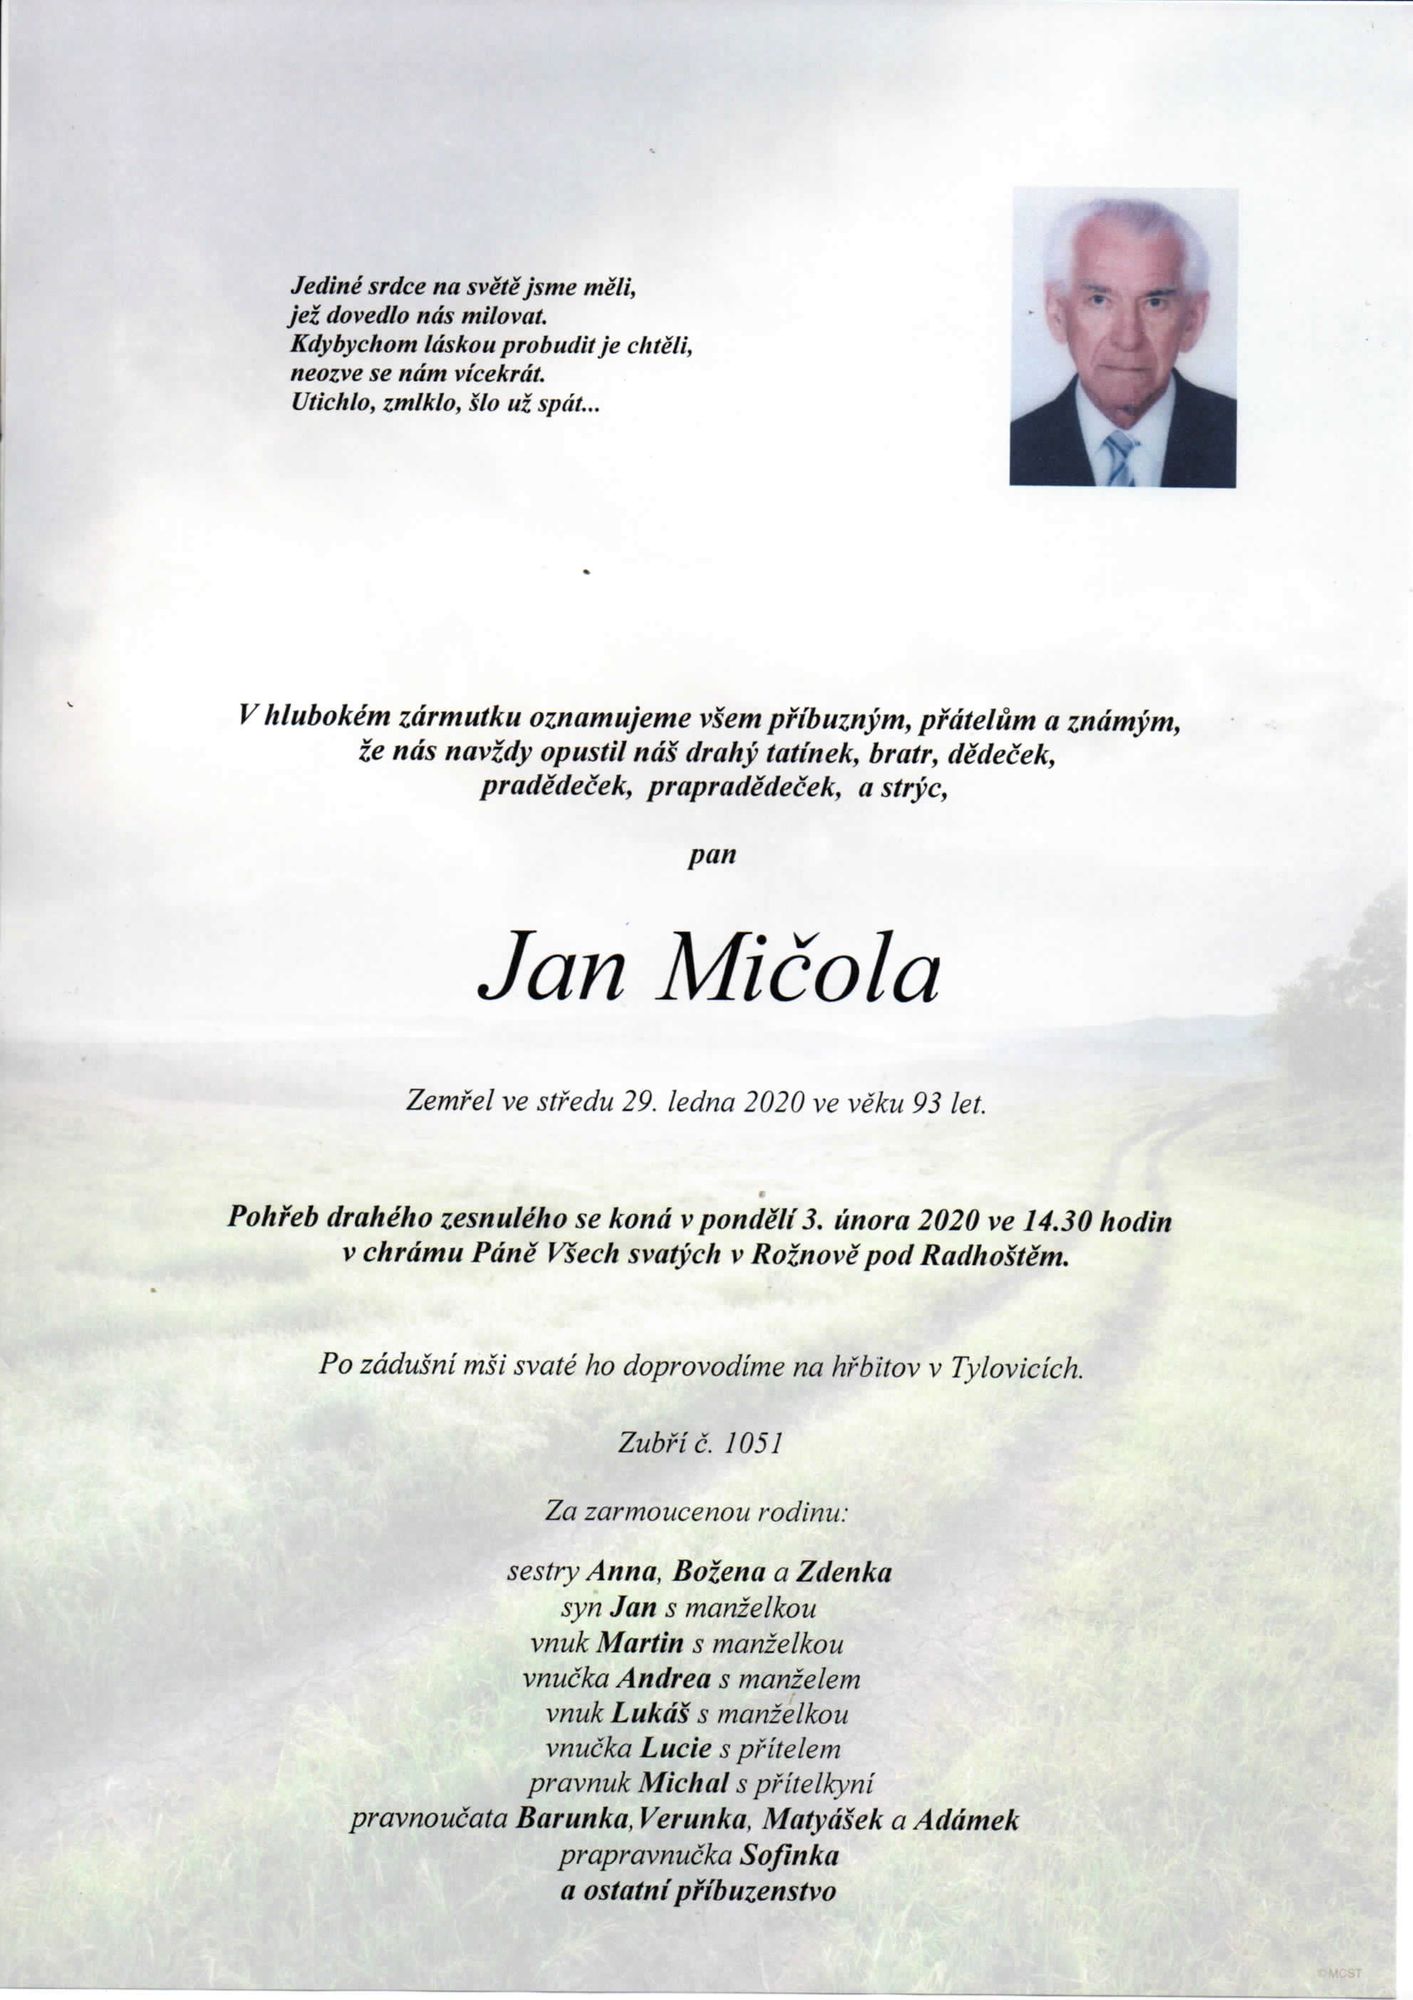 Jan Mičola